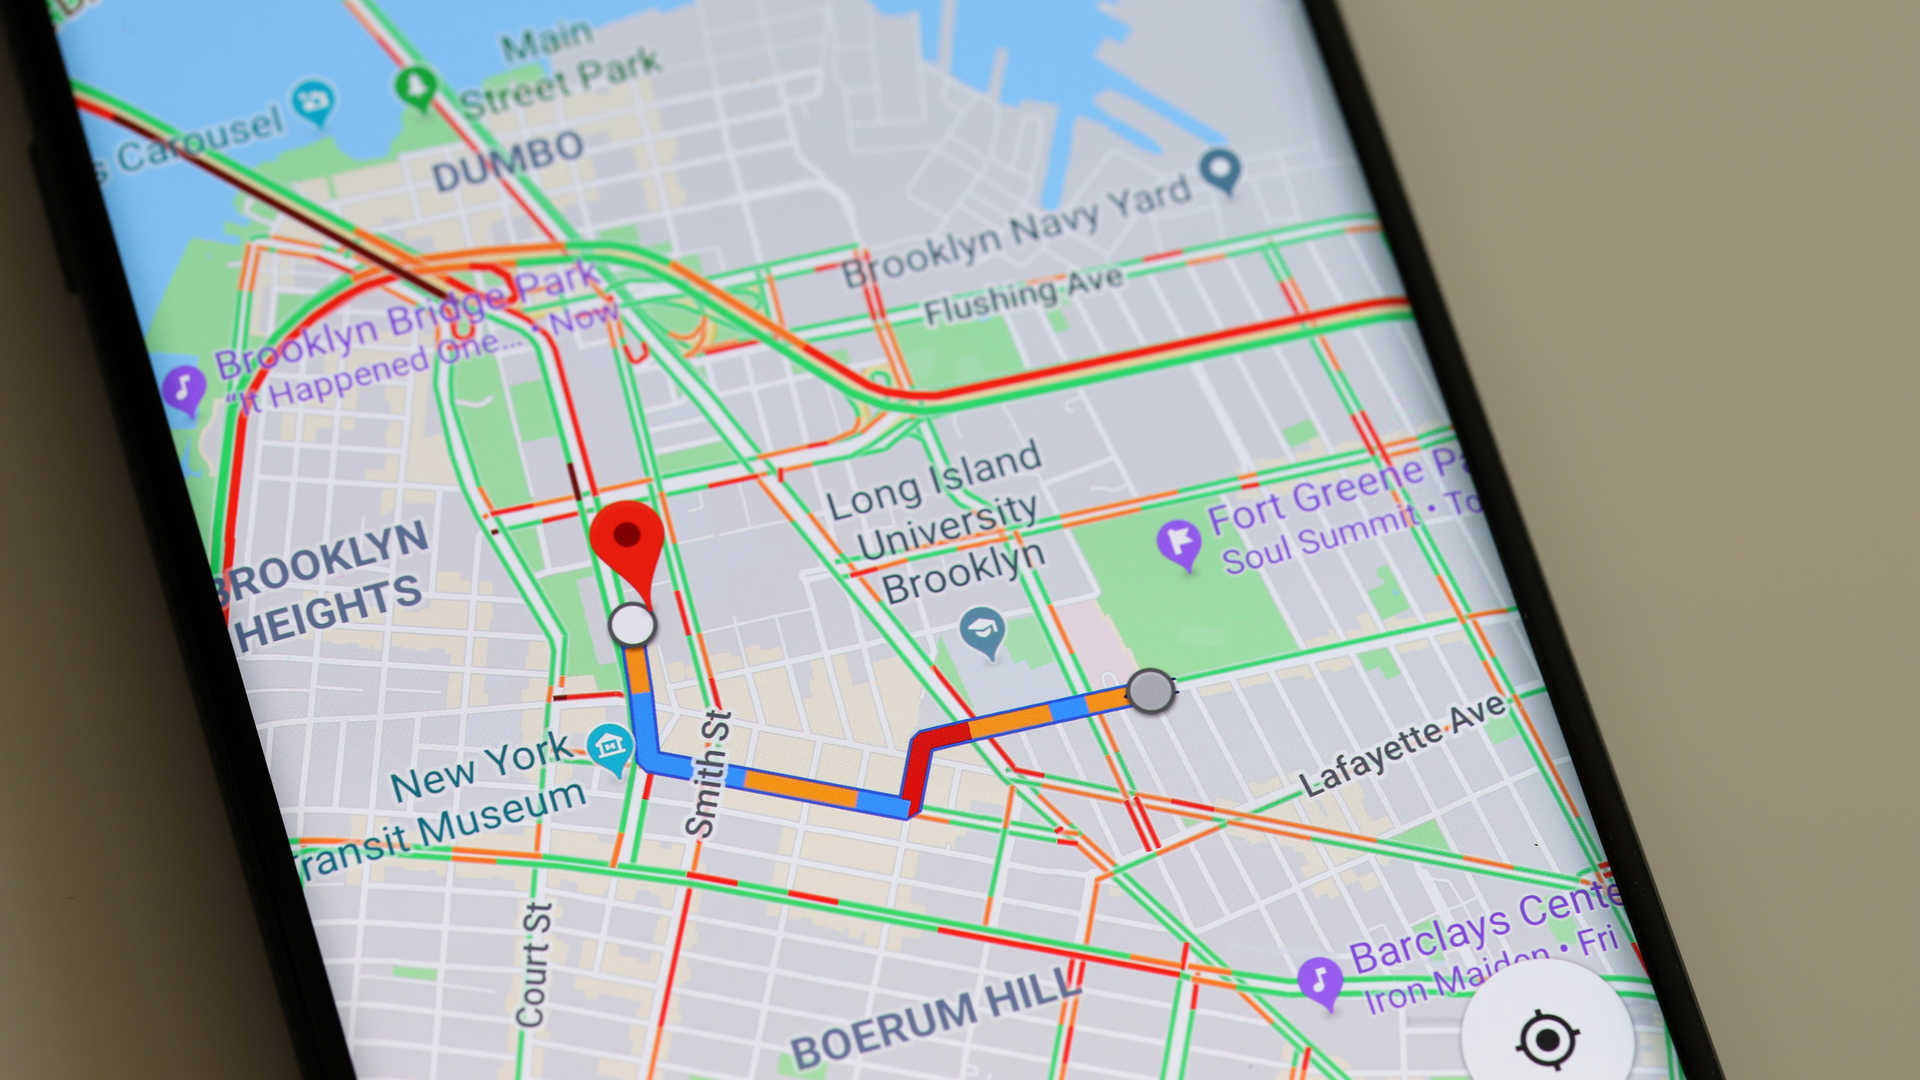 Ponsel Android dengan Google Maps - Cara menonaktifkan pelacakan lokasi di Android